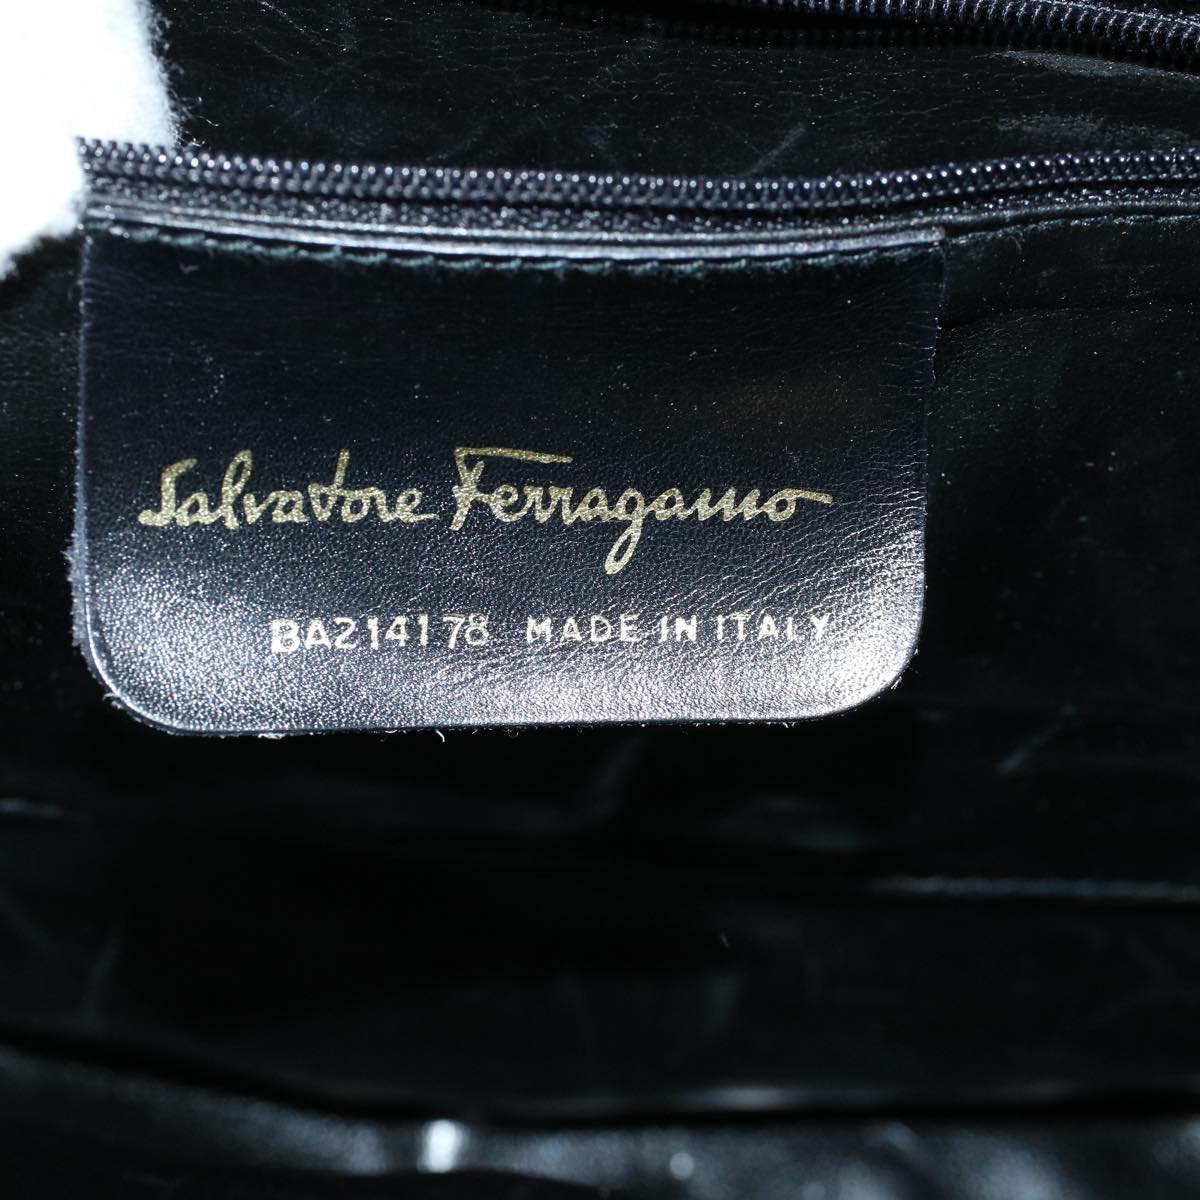 Salvatore Ferragamo Hand Bag Suede Black Auth cl726